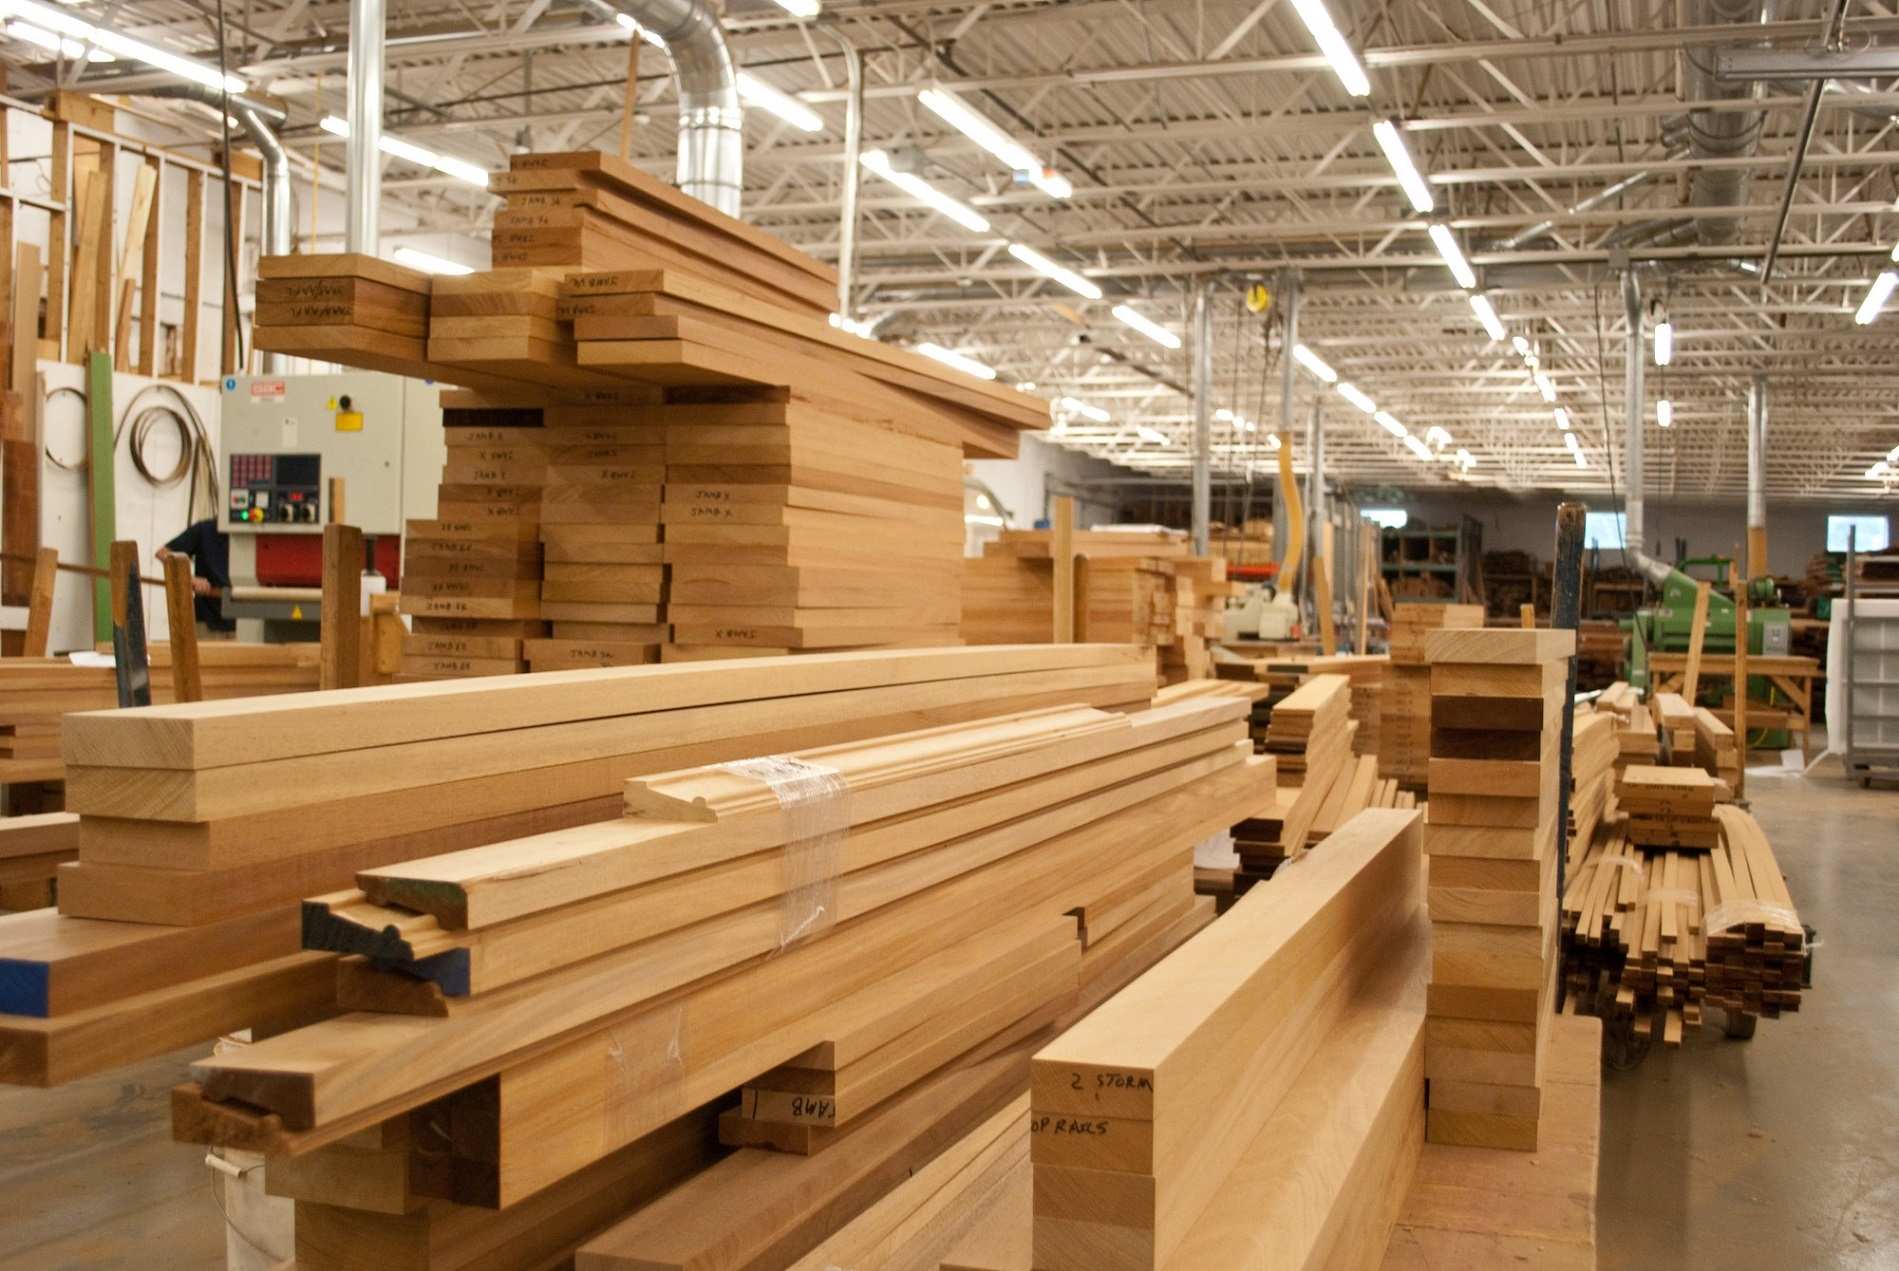 Những khối gỗ chuẩn bị được xuất khẩu